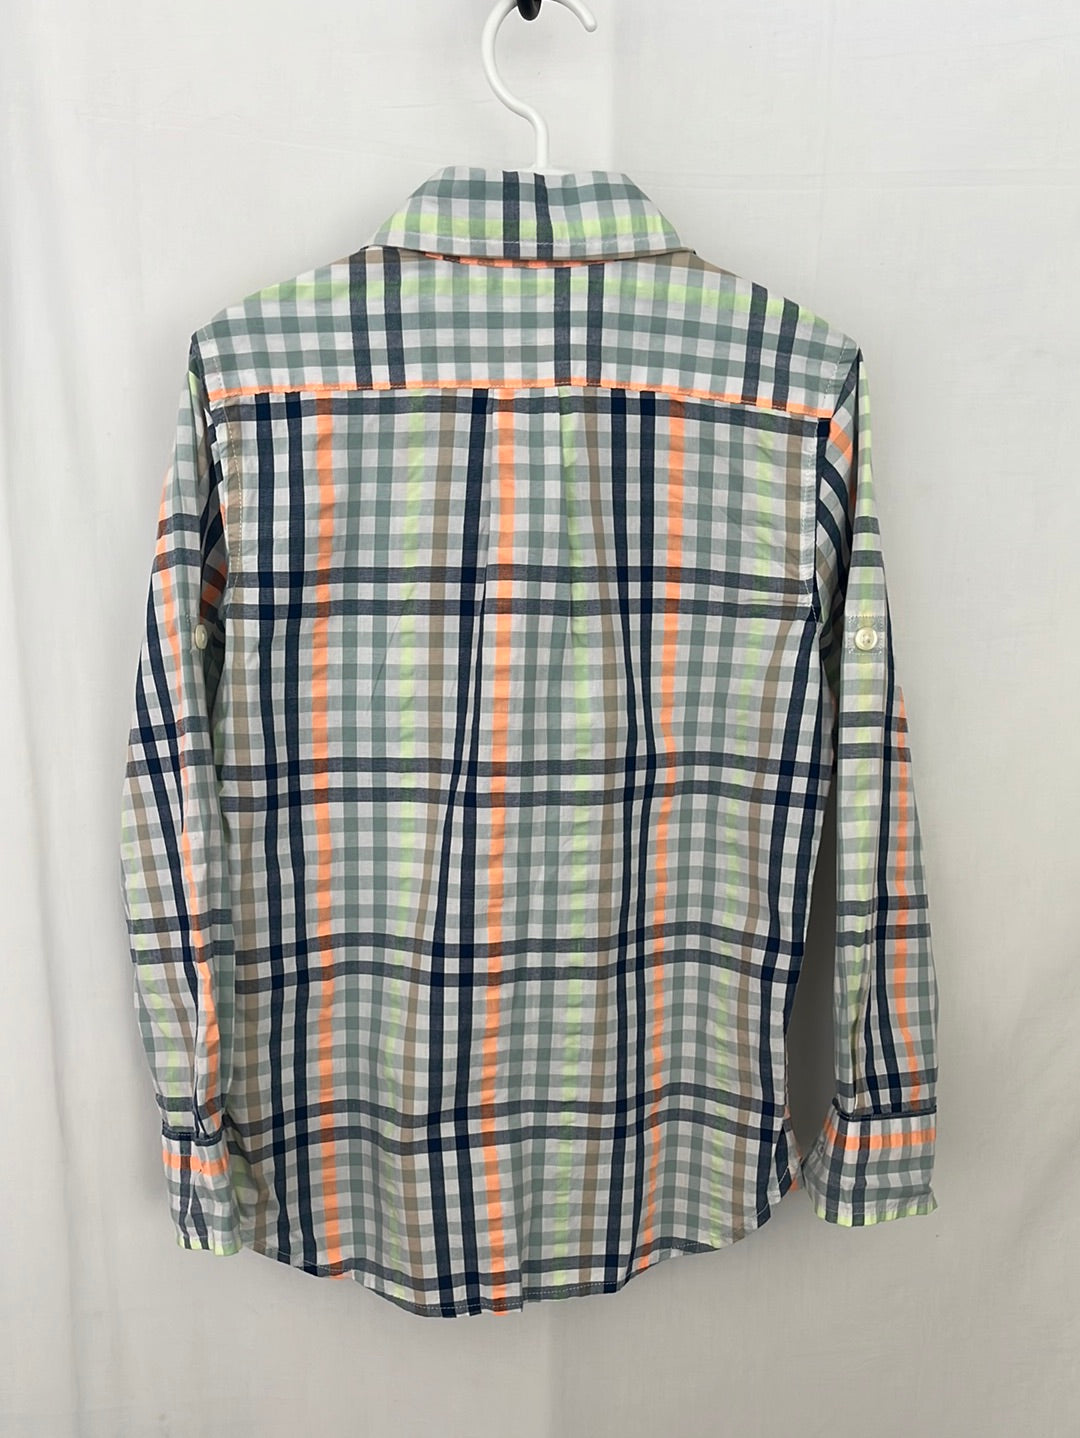 NWT -- GAP KIDS Blue Green Orange Plaid Long Sleeve Button Down Shirt -- 6-7